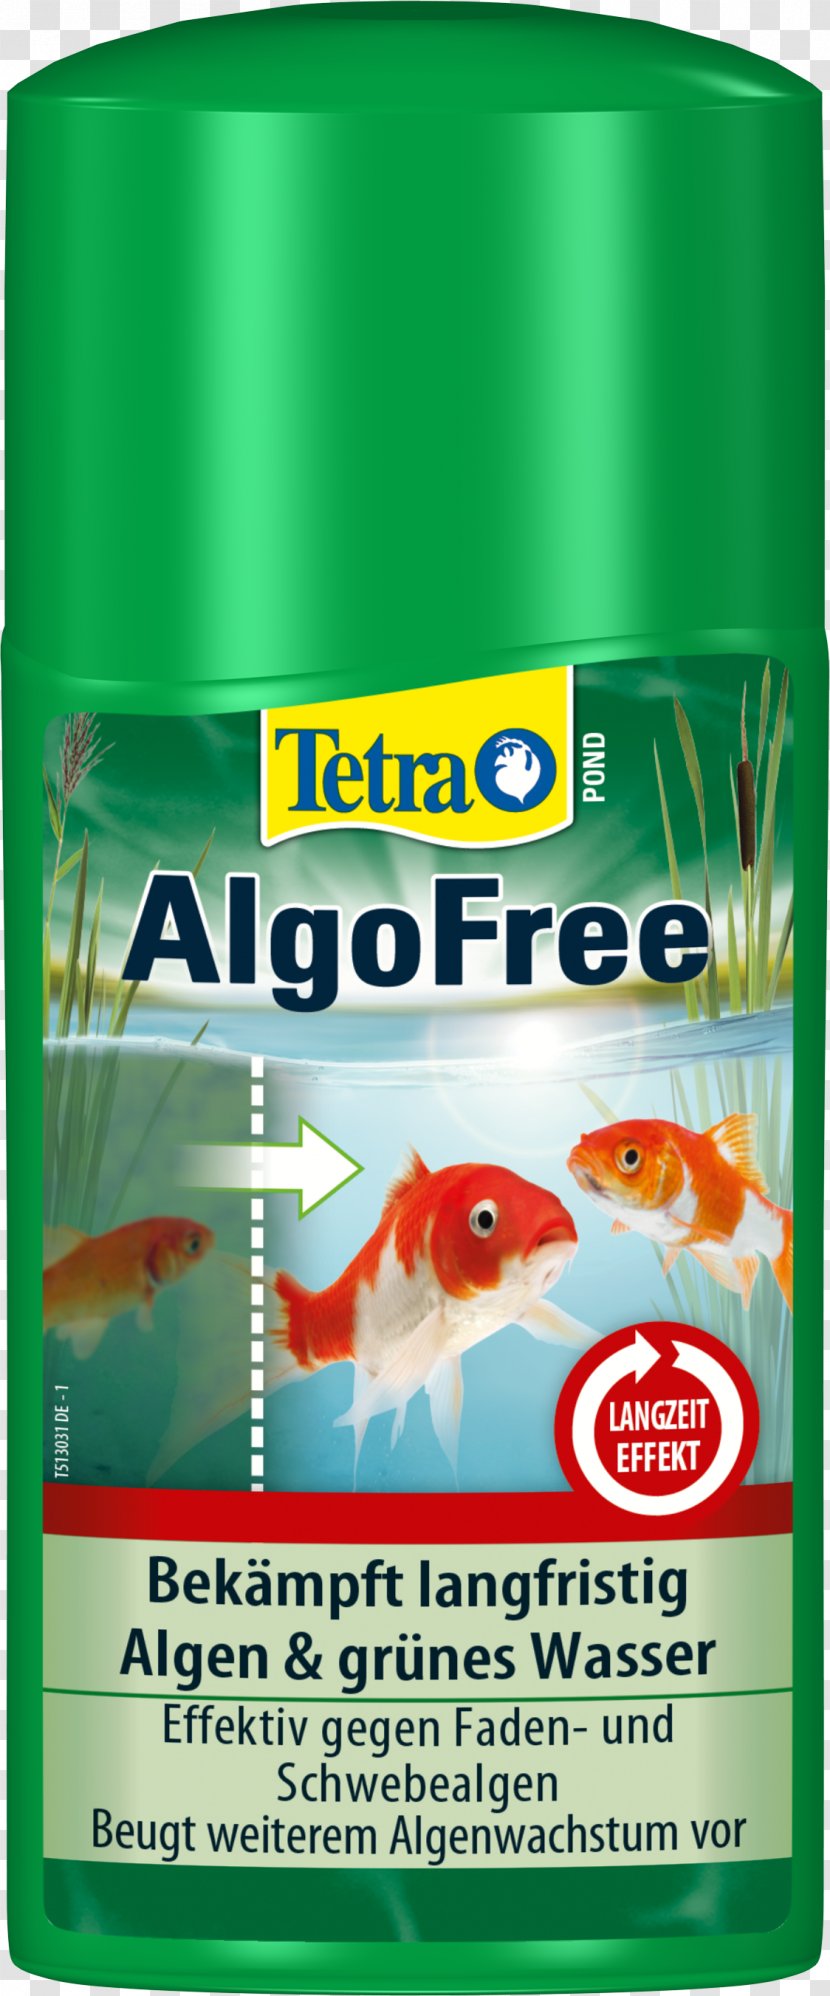 Product Tetra - Liquid Transparent PNG